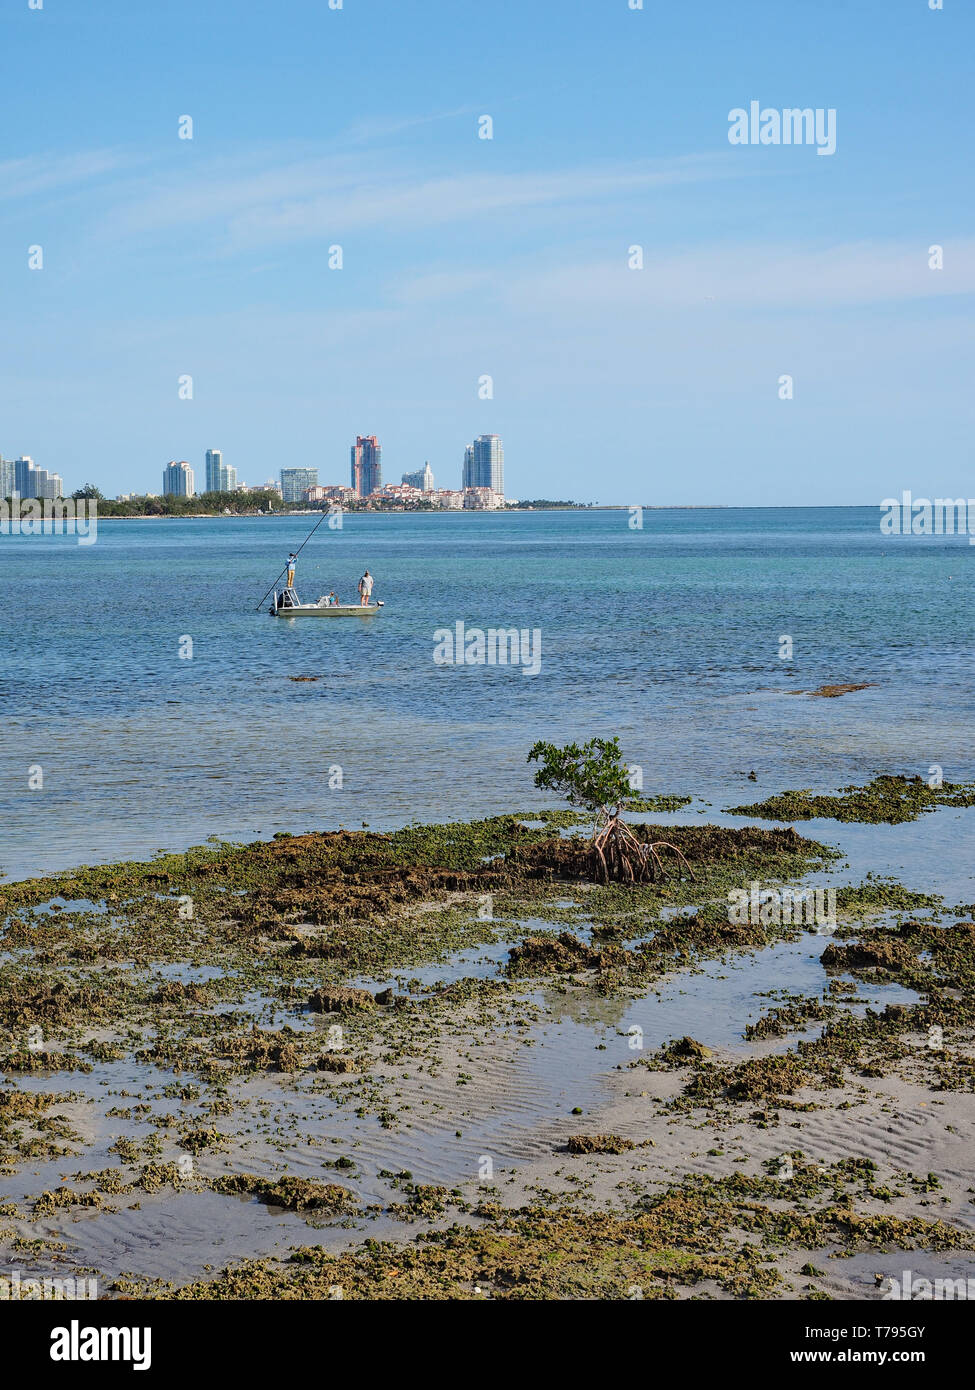 Les pêcheurs de corail fossilisé dans Bear Cut sur Key Biscayne, en Floride, à marée basse avec des immeubles de Miami Beach dans l'arrière-plan. Banque D'Images